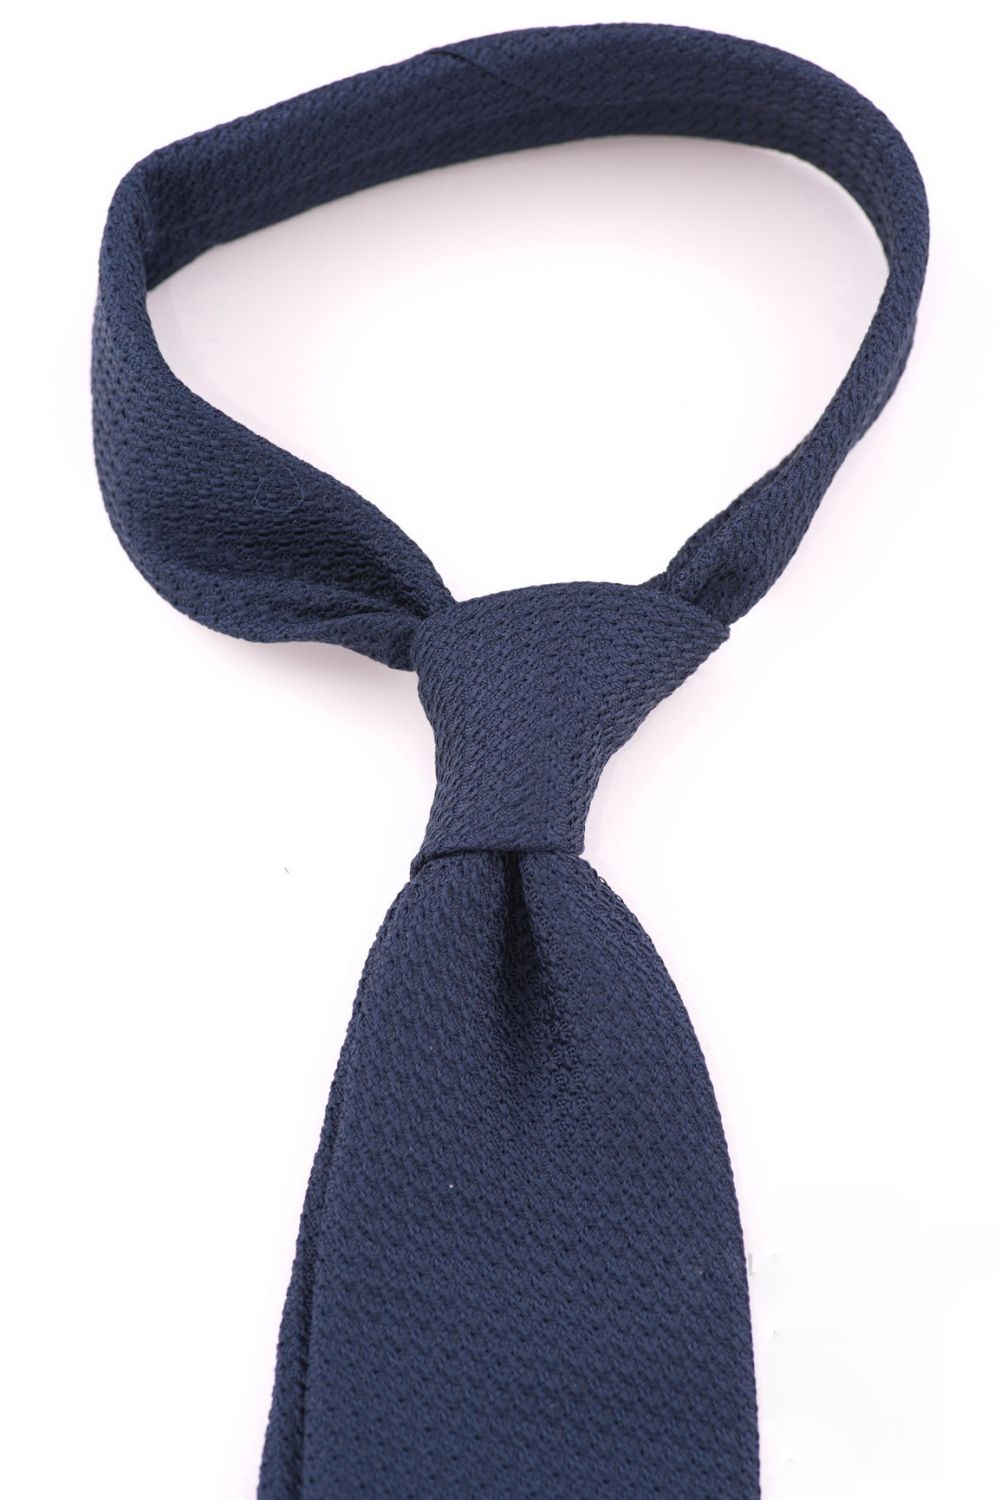 navy blue tie